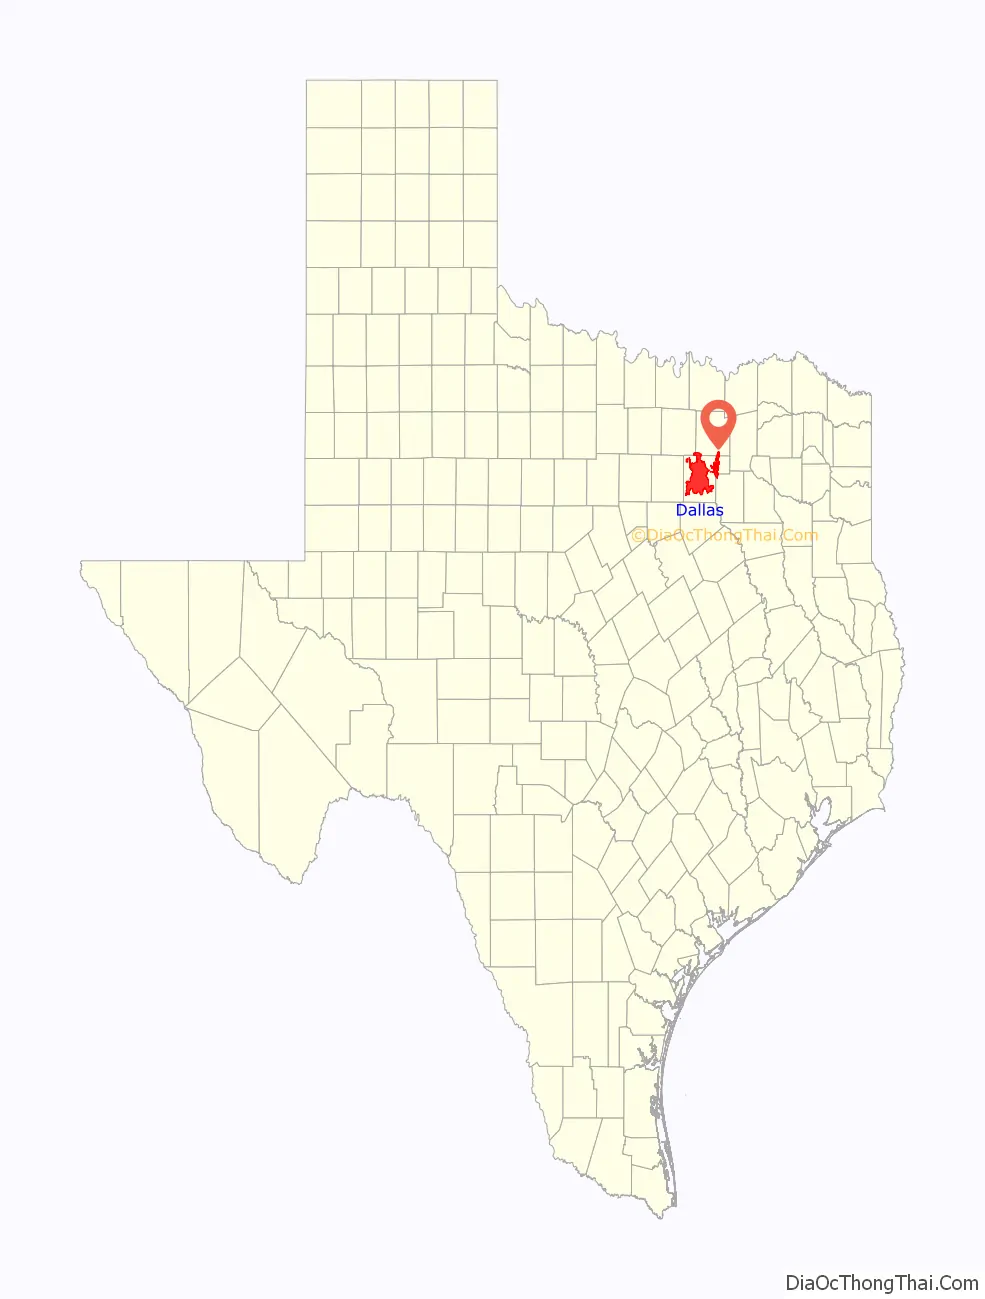 Dallas location on the Texas map. Where is Dallas city.